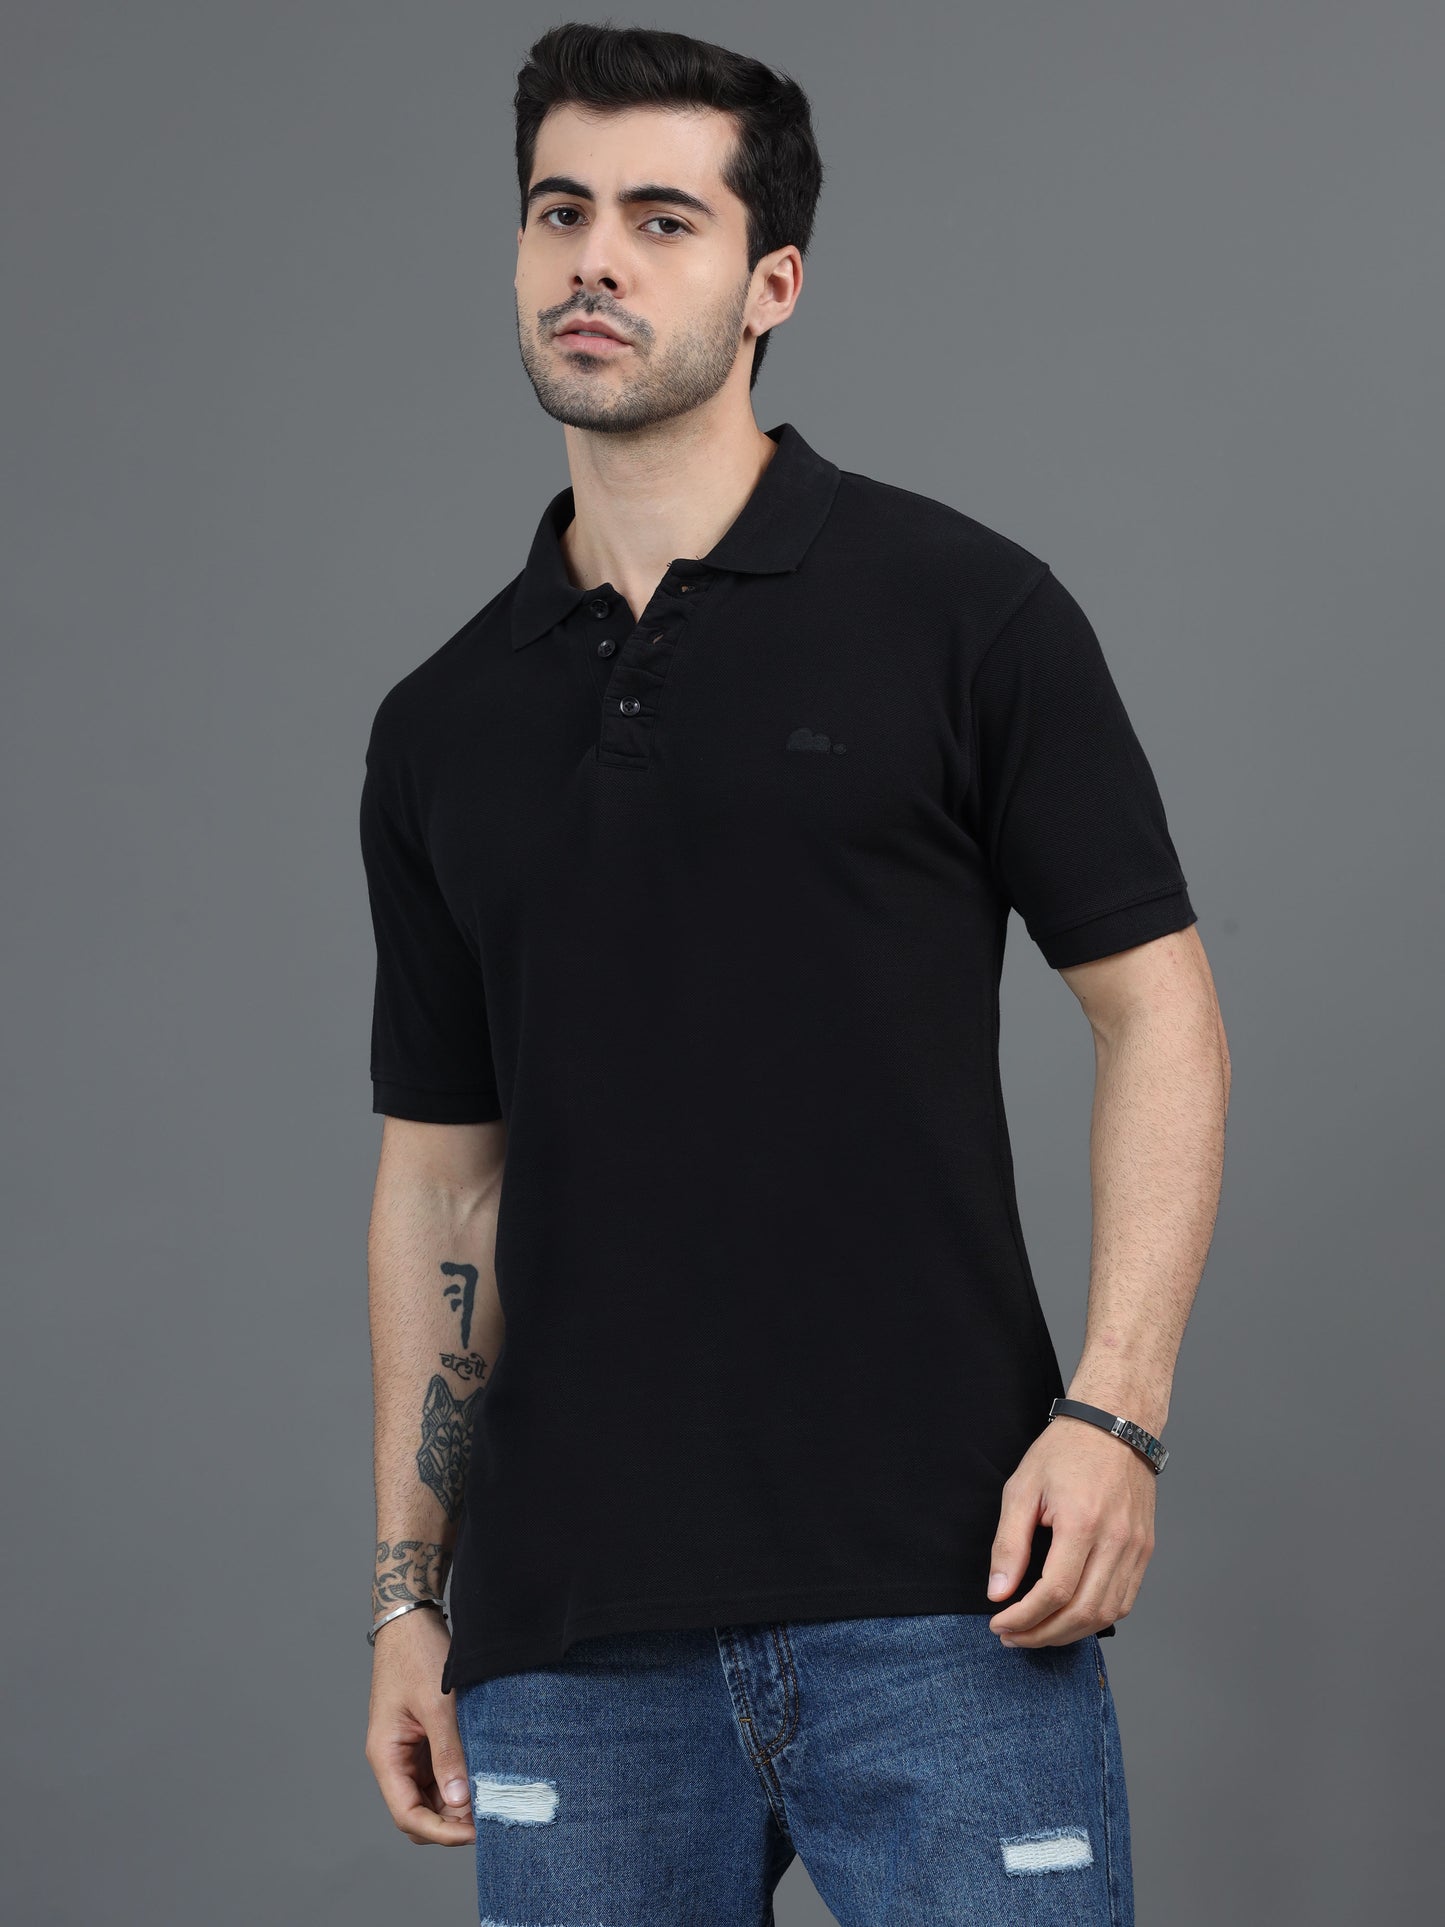 Black T Shirt for Men